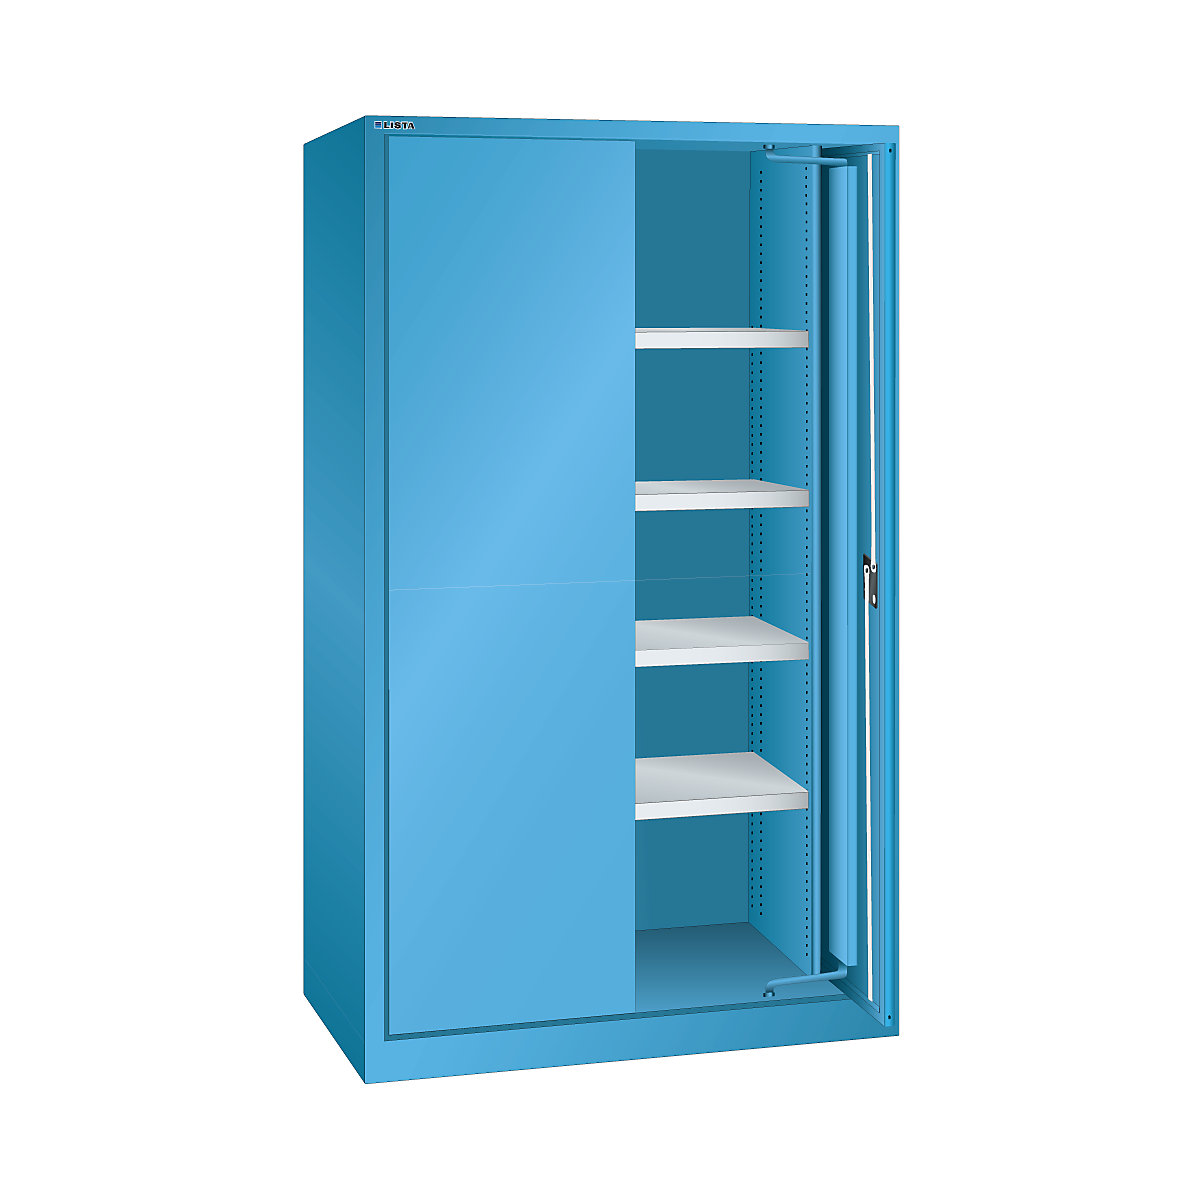 Nagy teherbírású, beforduló ajtós szekrény – LISTA, 4 polc, sima lemezes ajtókkal, világoskék-8